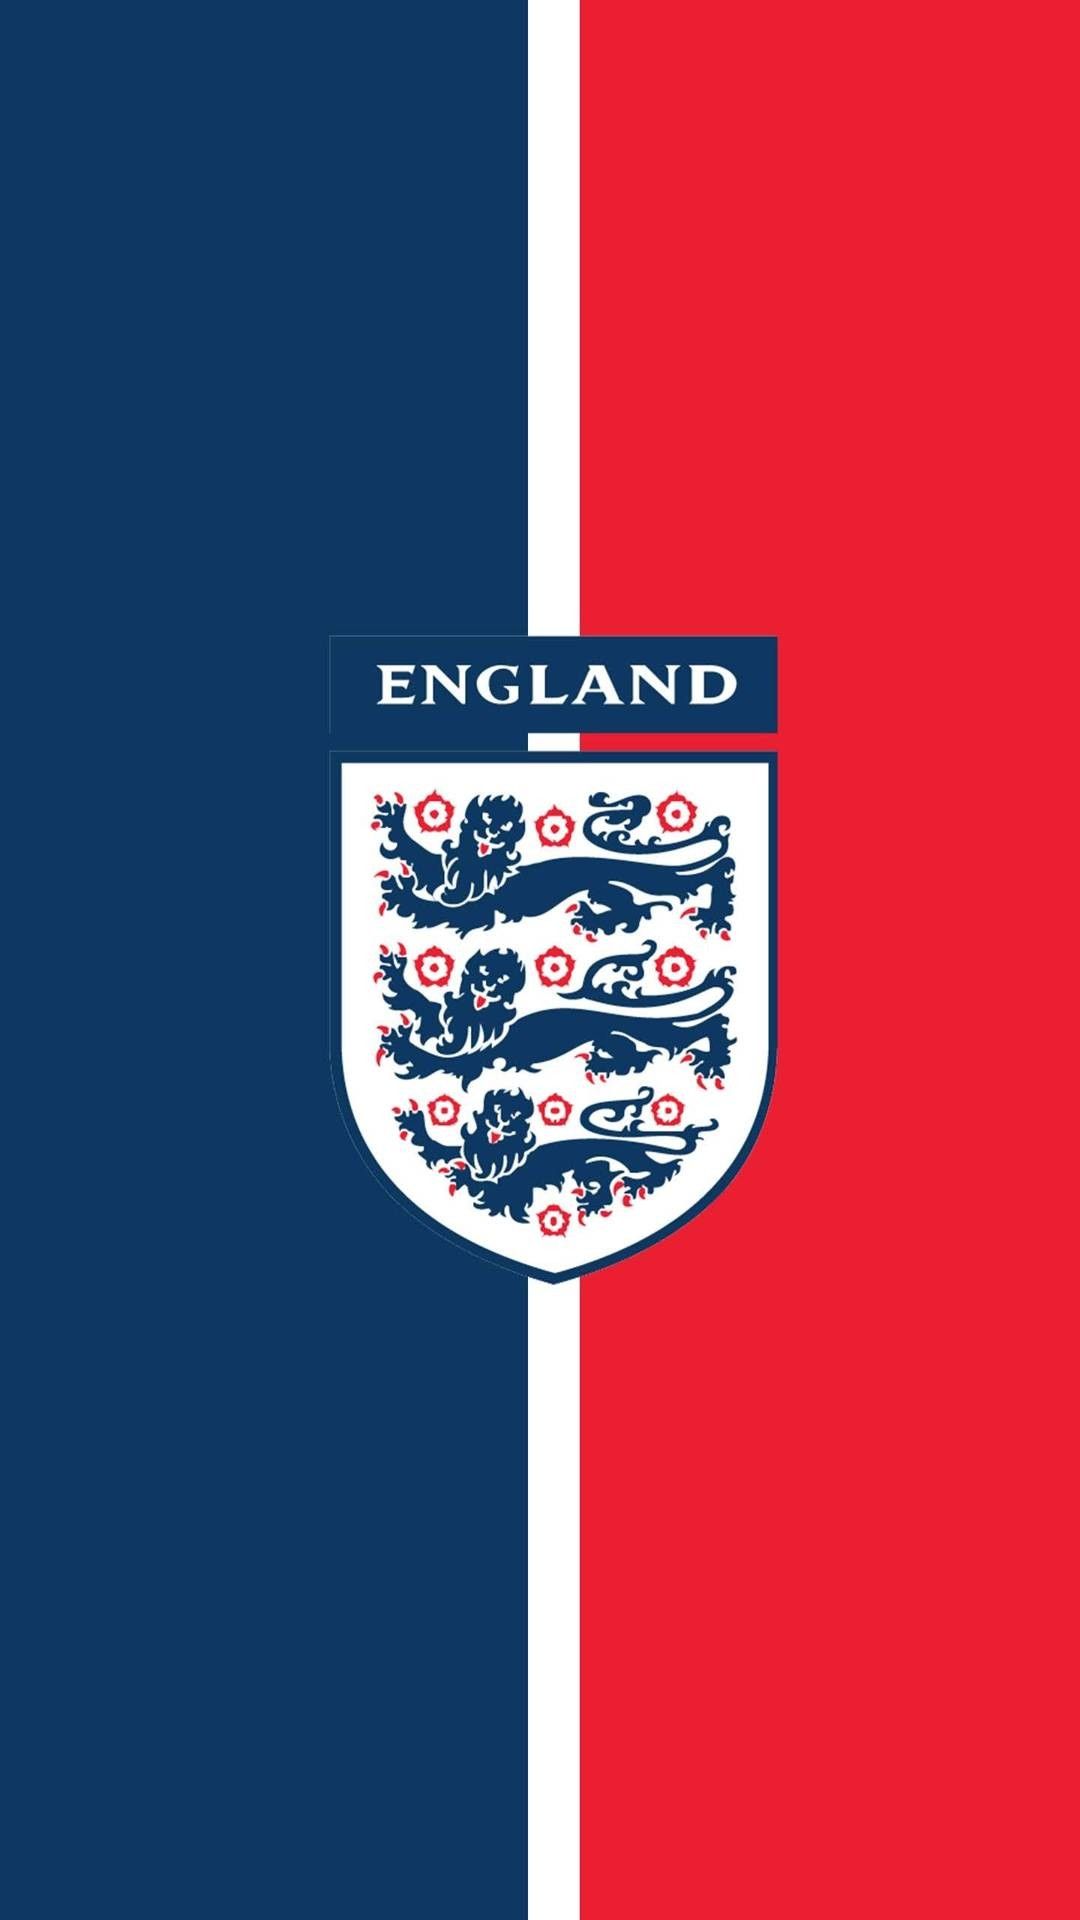 England wallpaper. Team wallpaper, England football team, England national football team